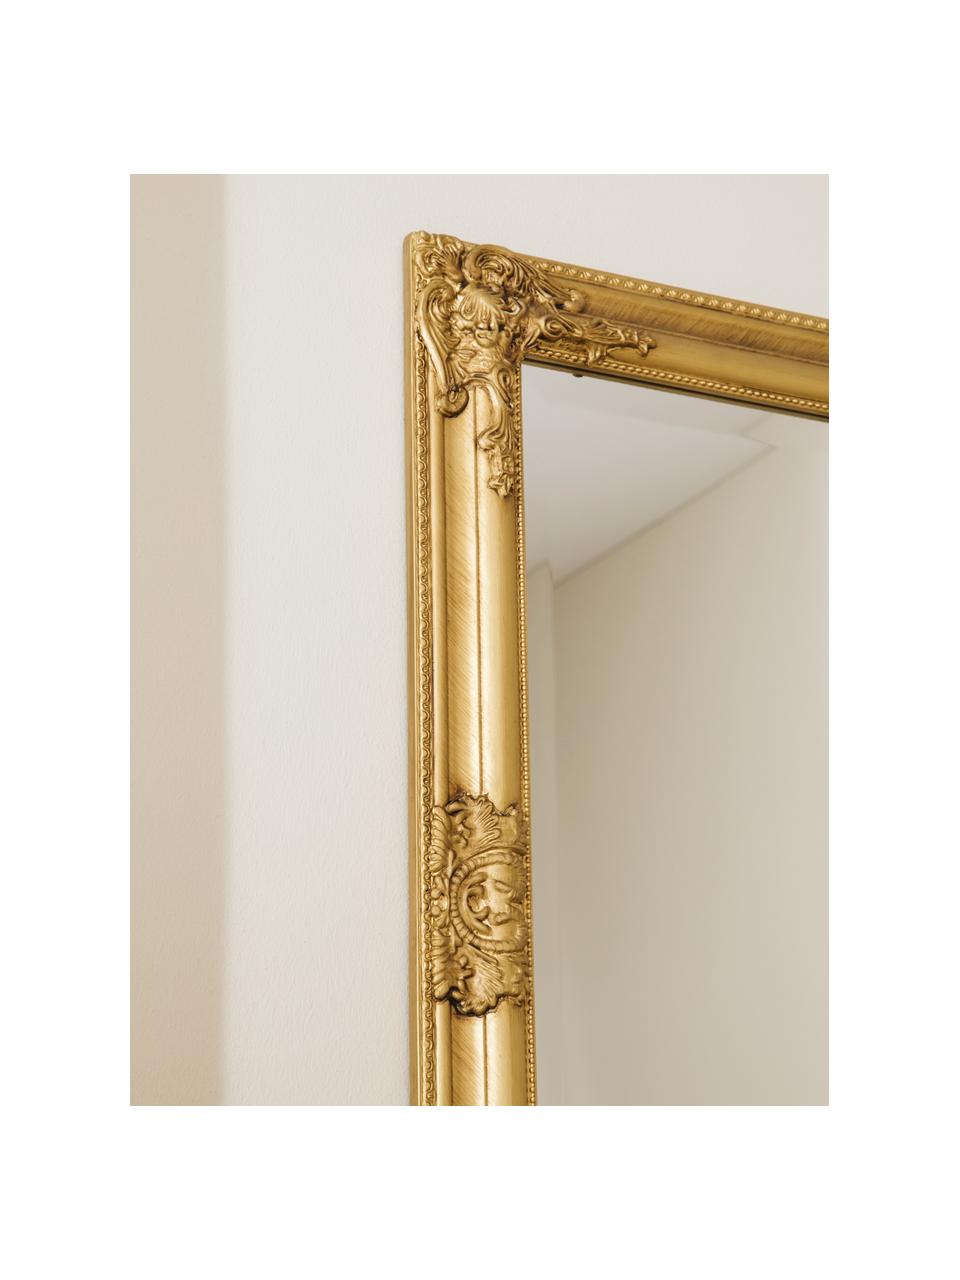 Specchio da parete con cornice dorata effetto vintage Miro